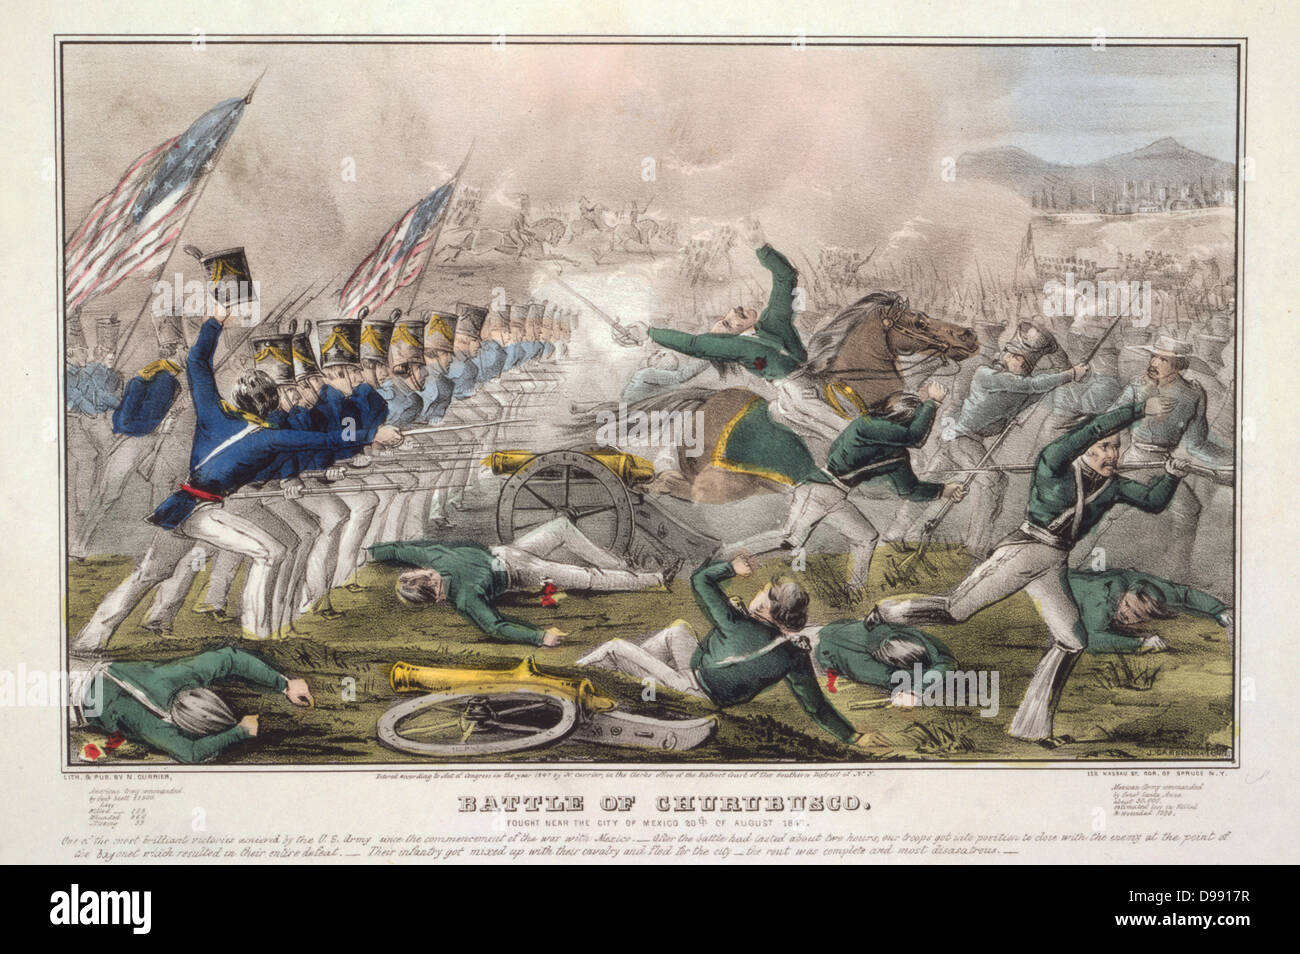 Guerre américano-mexicaine 1846-1848 : Bataille de Churubusco, 10 août 1847, se sont battus à 5 miles de la ville de Mexico. L'infanterie américaine mexicaine de charge batterie sur le terrain. Victoire américaine. Currier & Ives imprimer, c1846. Banque D'Images